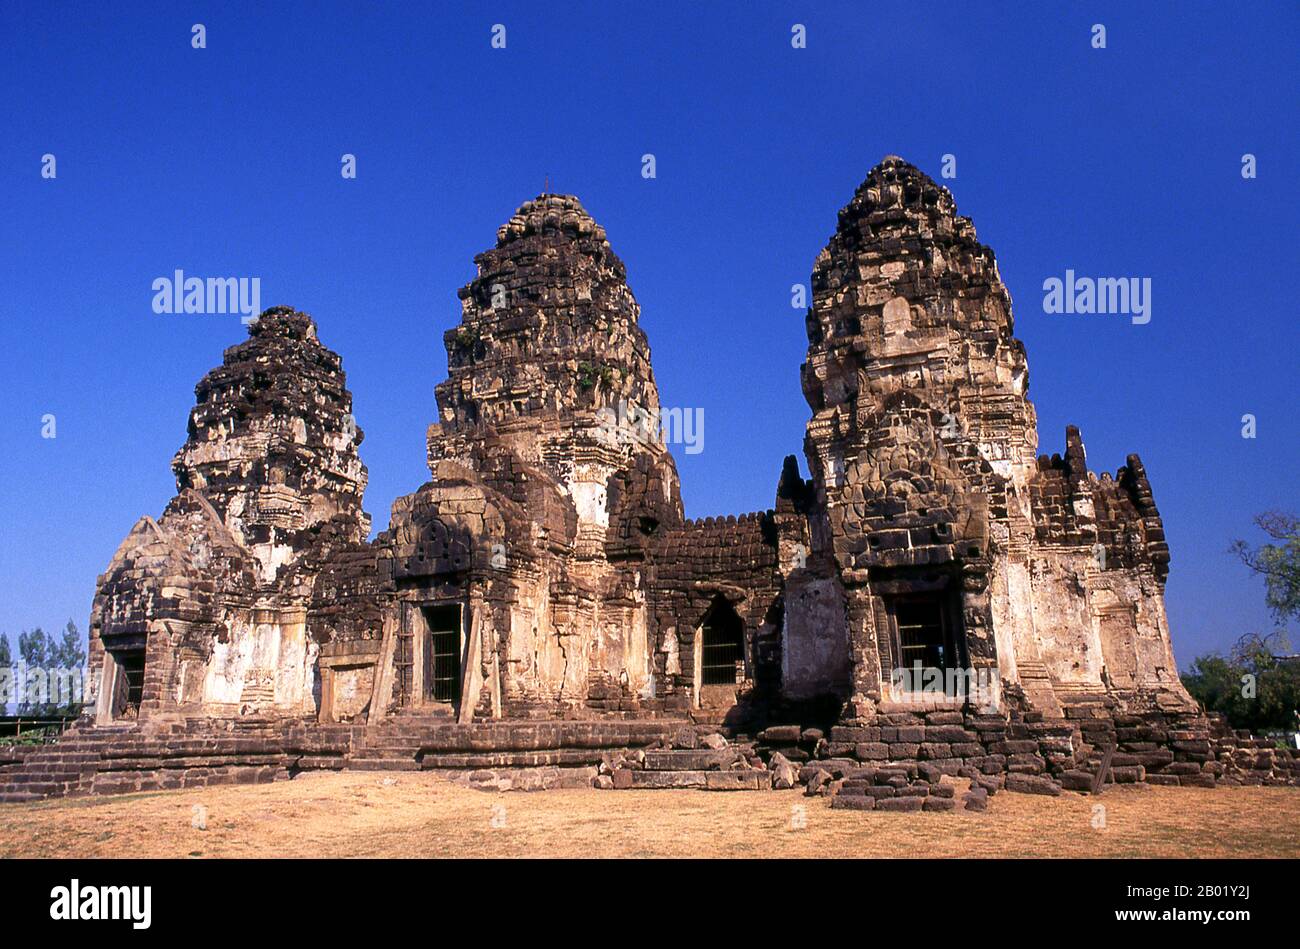 Thailandia: Il 13 ° secolo Prang Sam Yot, originariamente un tempio Khmer indù, ha tre prangs che ha usato per rappresentare Brahma, Vishnu, e Shiva (la trinità indù). Fu poi convertito in un santuario buddista. Il centro storico di Lopburi risale all'epoca dei Dvaravati (VI-XIII secolo). Originariamente era conosciuto come Lavo o Lavapura. Dopo la fondazione del regno di Ayutthaya nel XV secolo, Lopburi era una roccaforte dei governanti di Ayutthaya. In seguito divenne una nuova capitale reale durante il regno di re Narai il Grande del regno di Ayutthaya a metà del XVII secolo. Foto Stock